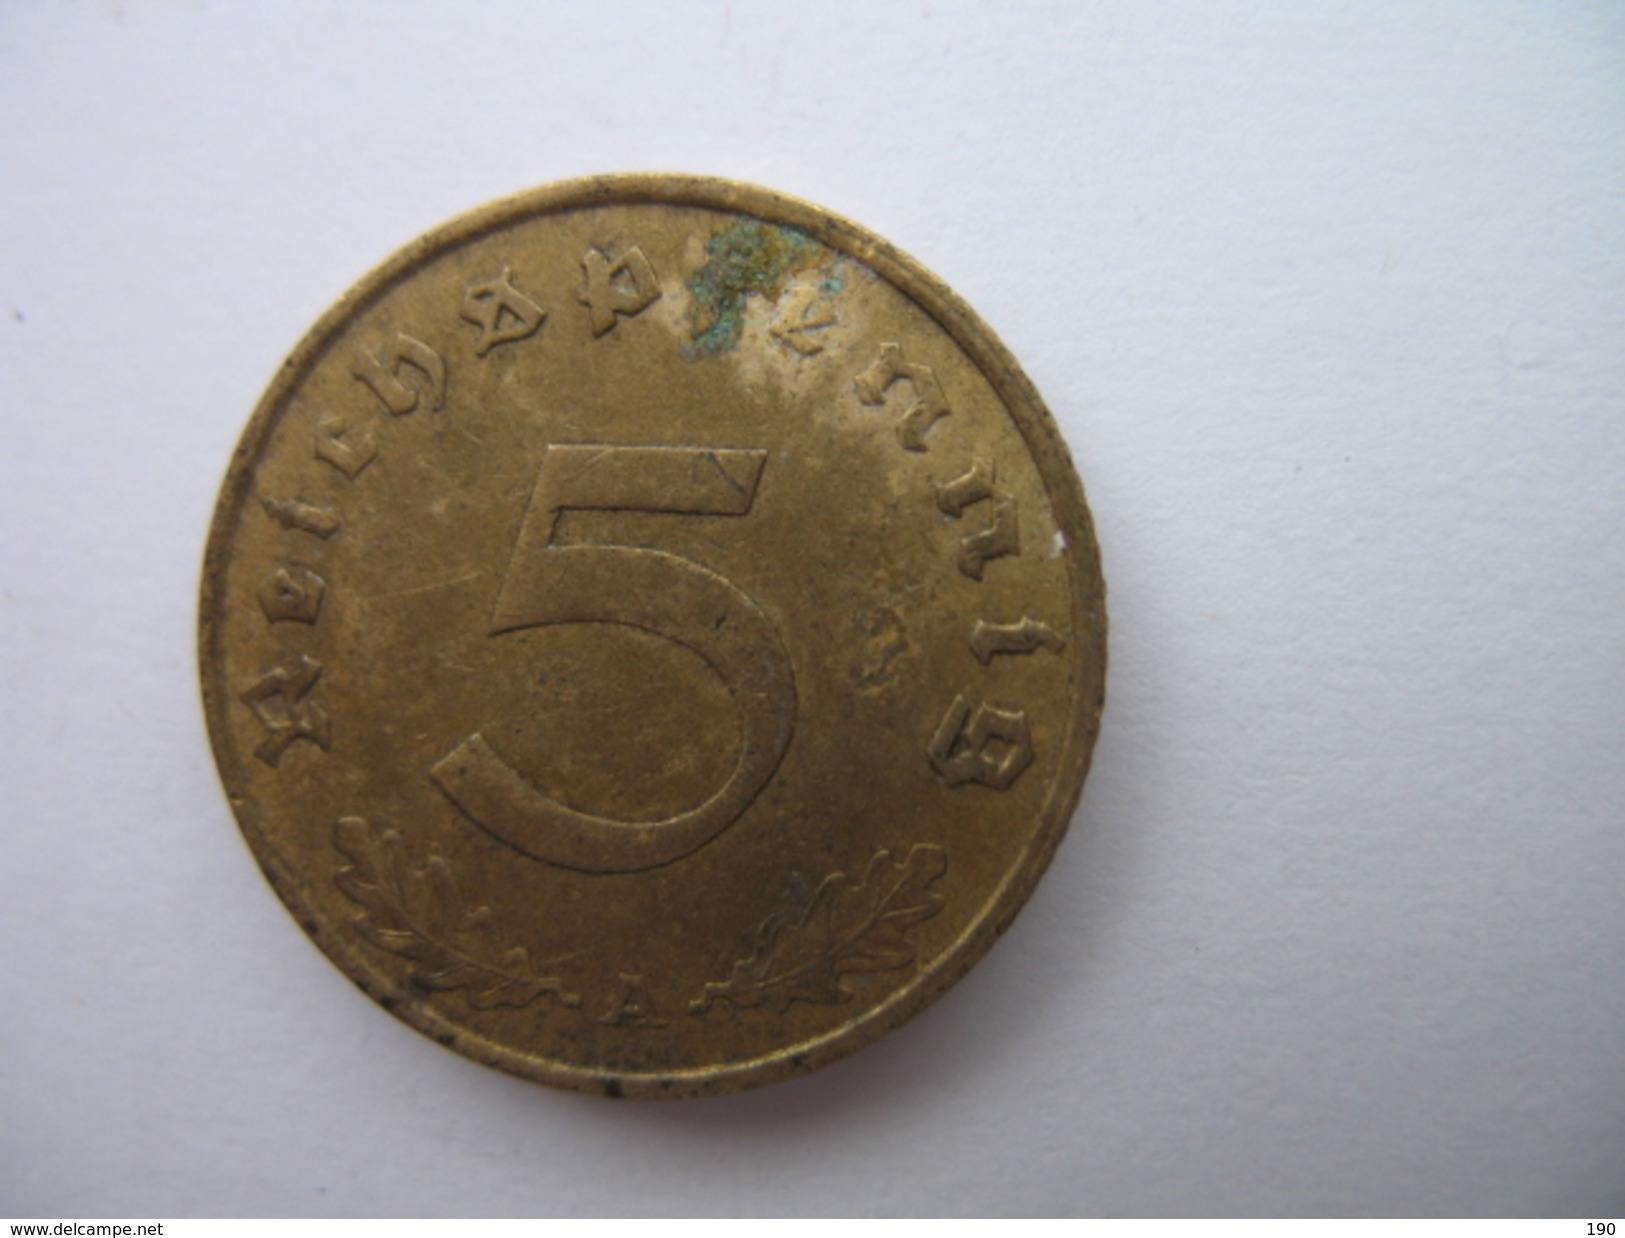 5 REICHSPFENNIG - 50 Reichspfennig